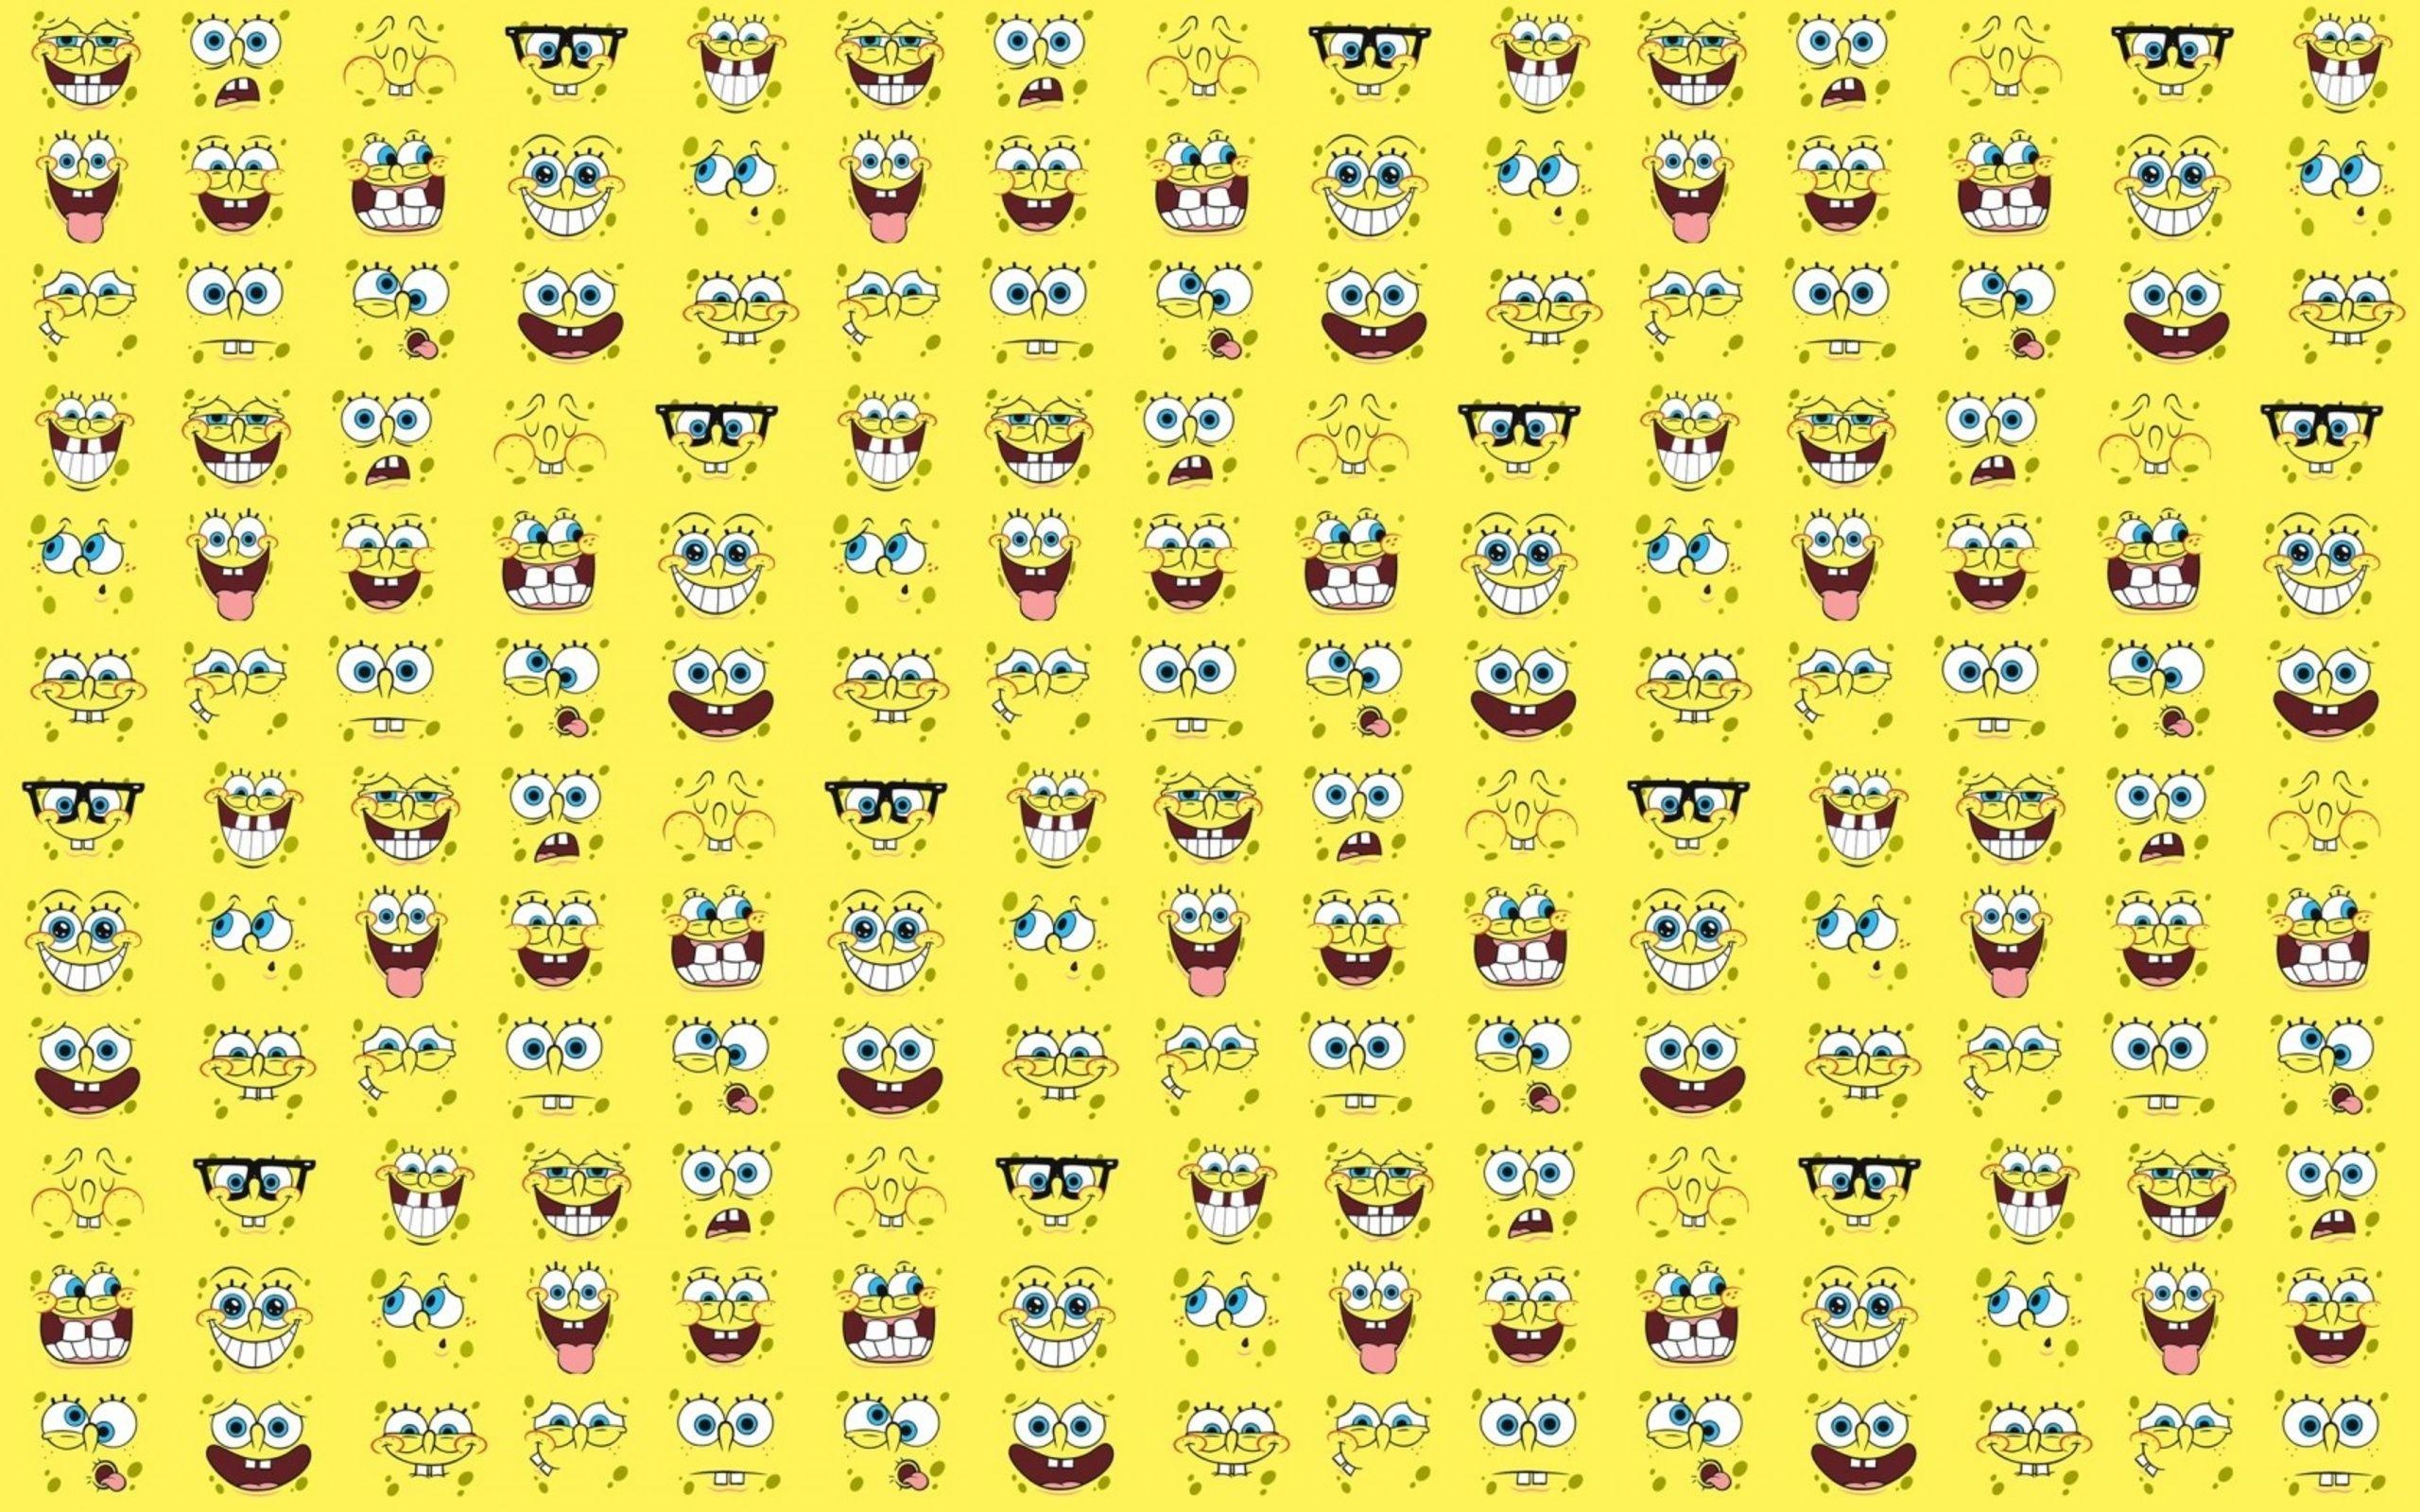 Spongebob Squarepants Widescreen Wallpaper 49594 2560x1600 px